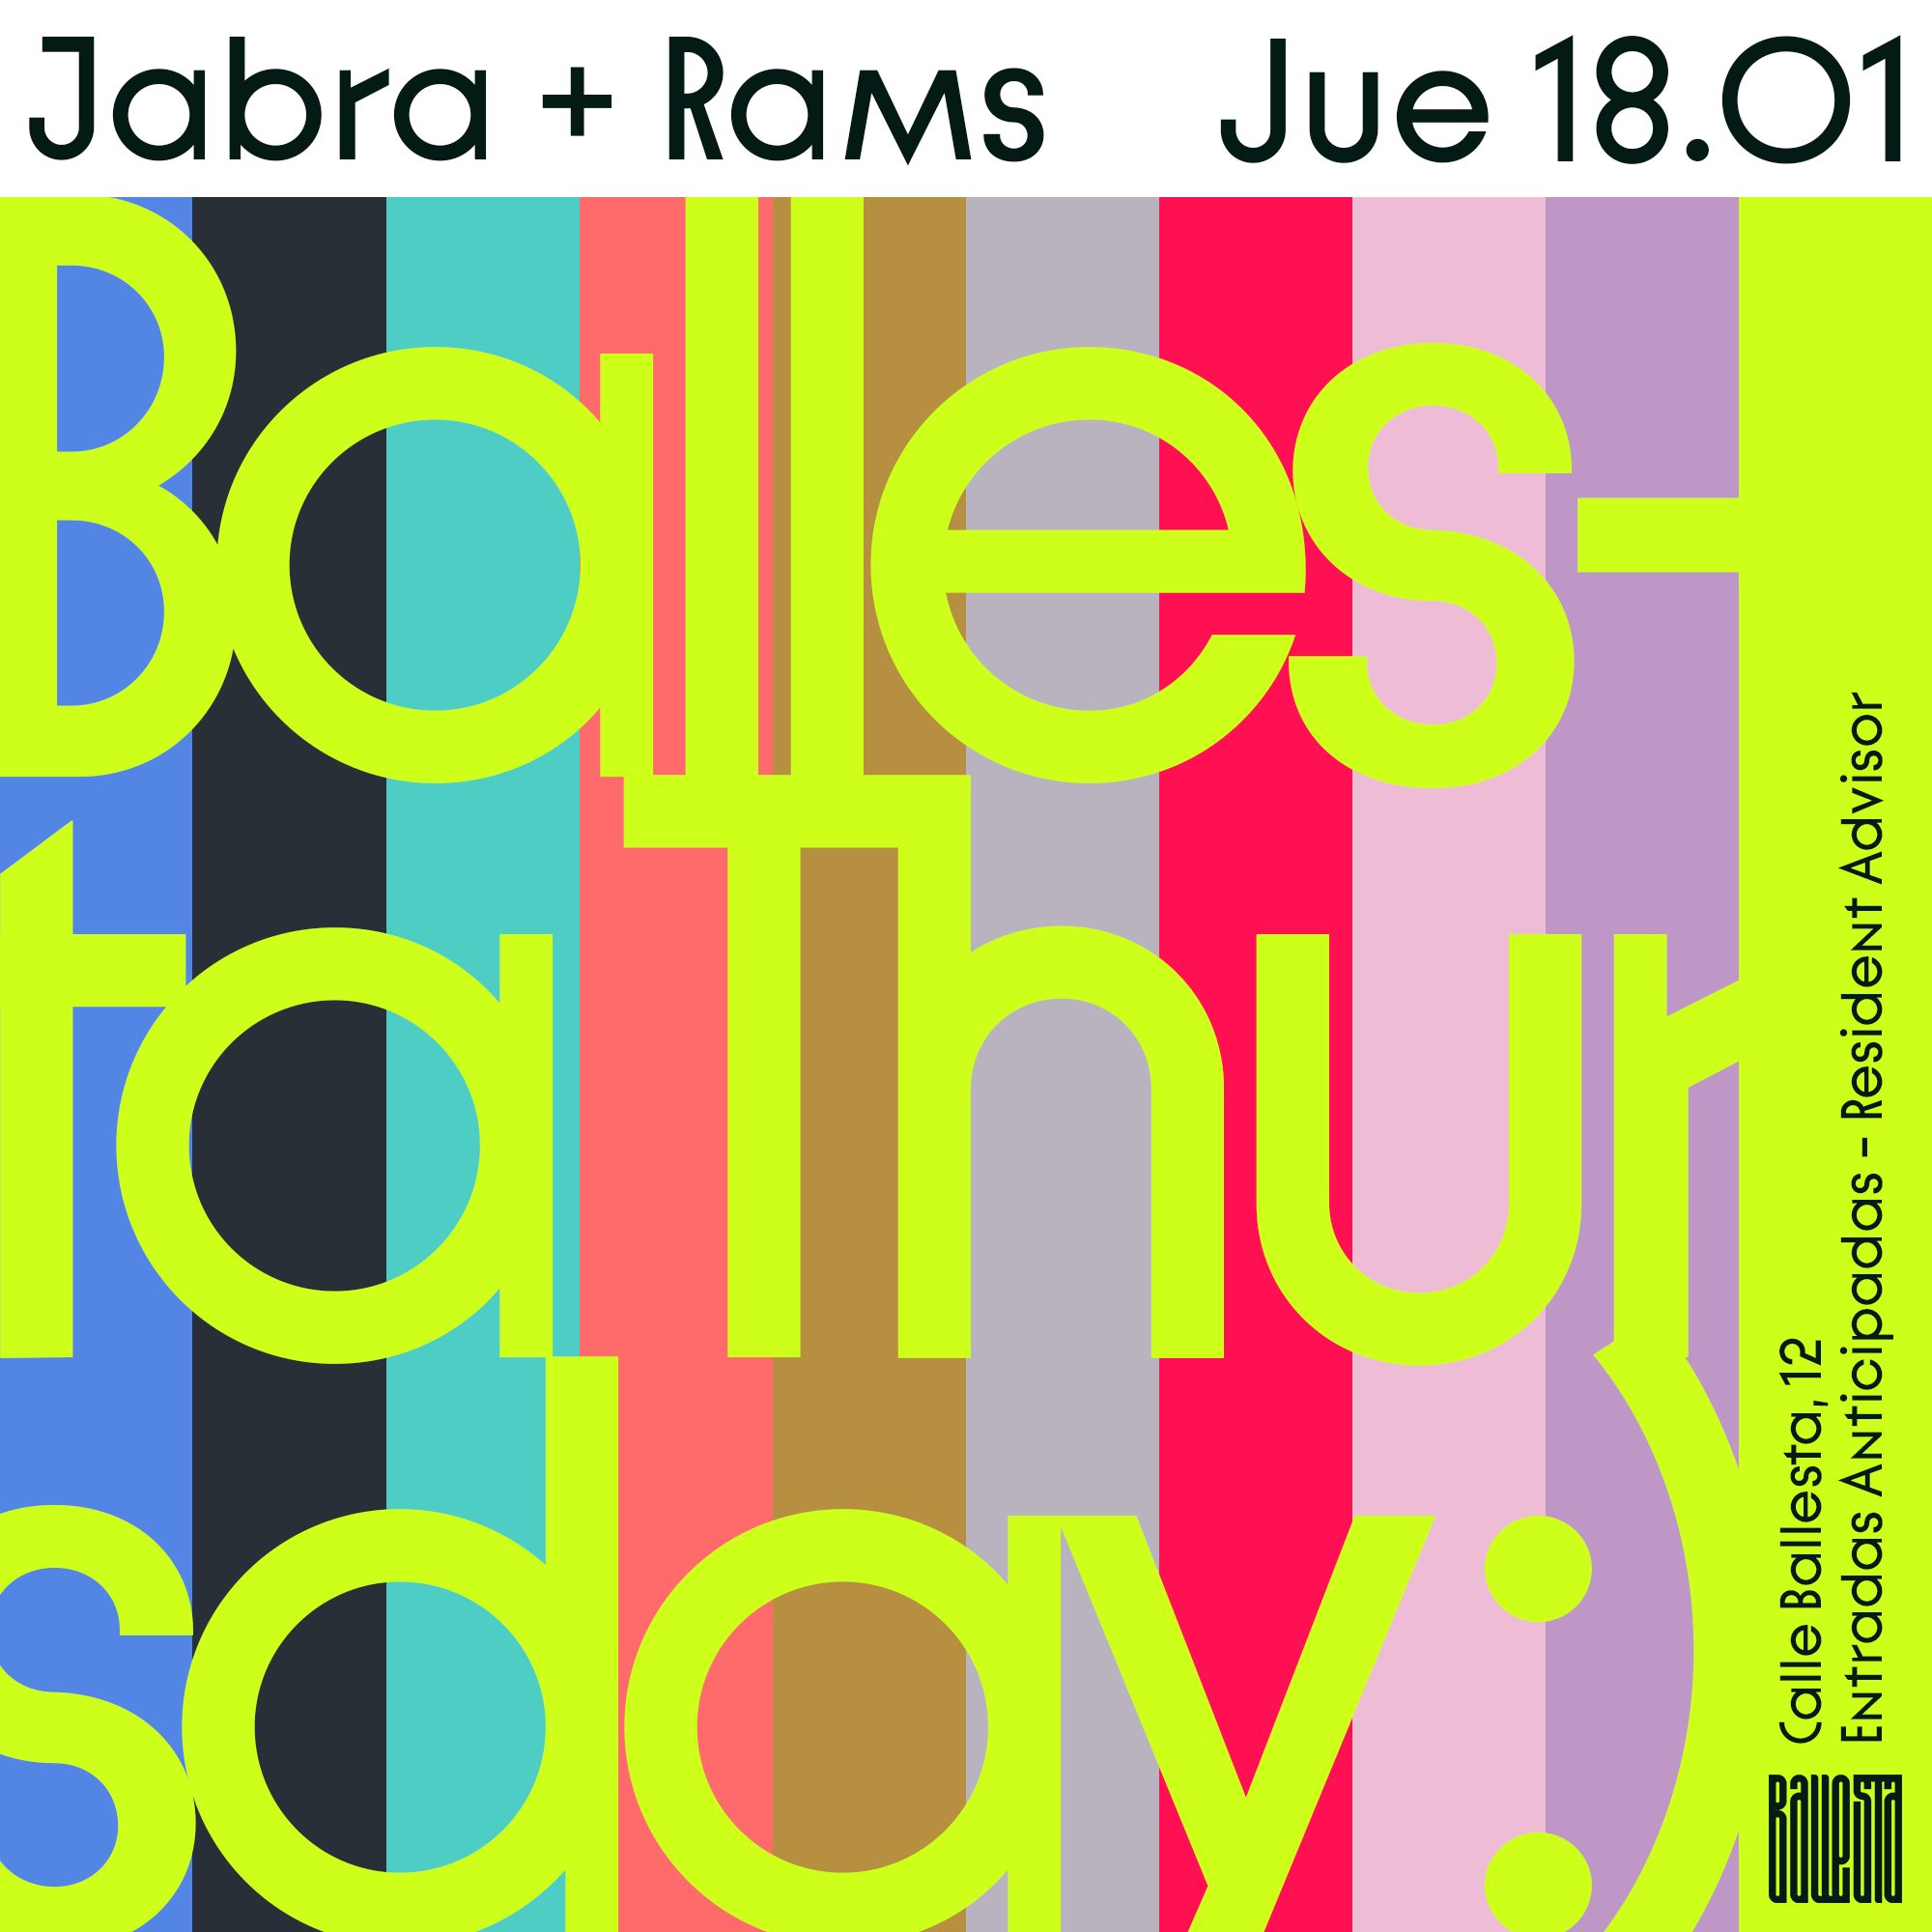 BALLESTA THURSDAY: Jabra + Rams - Página frontal